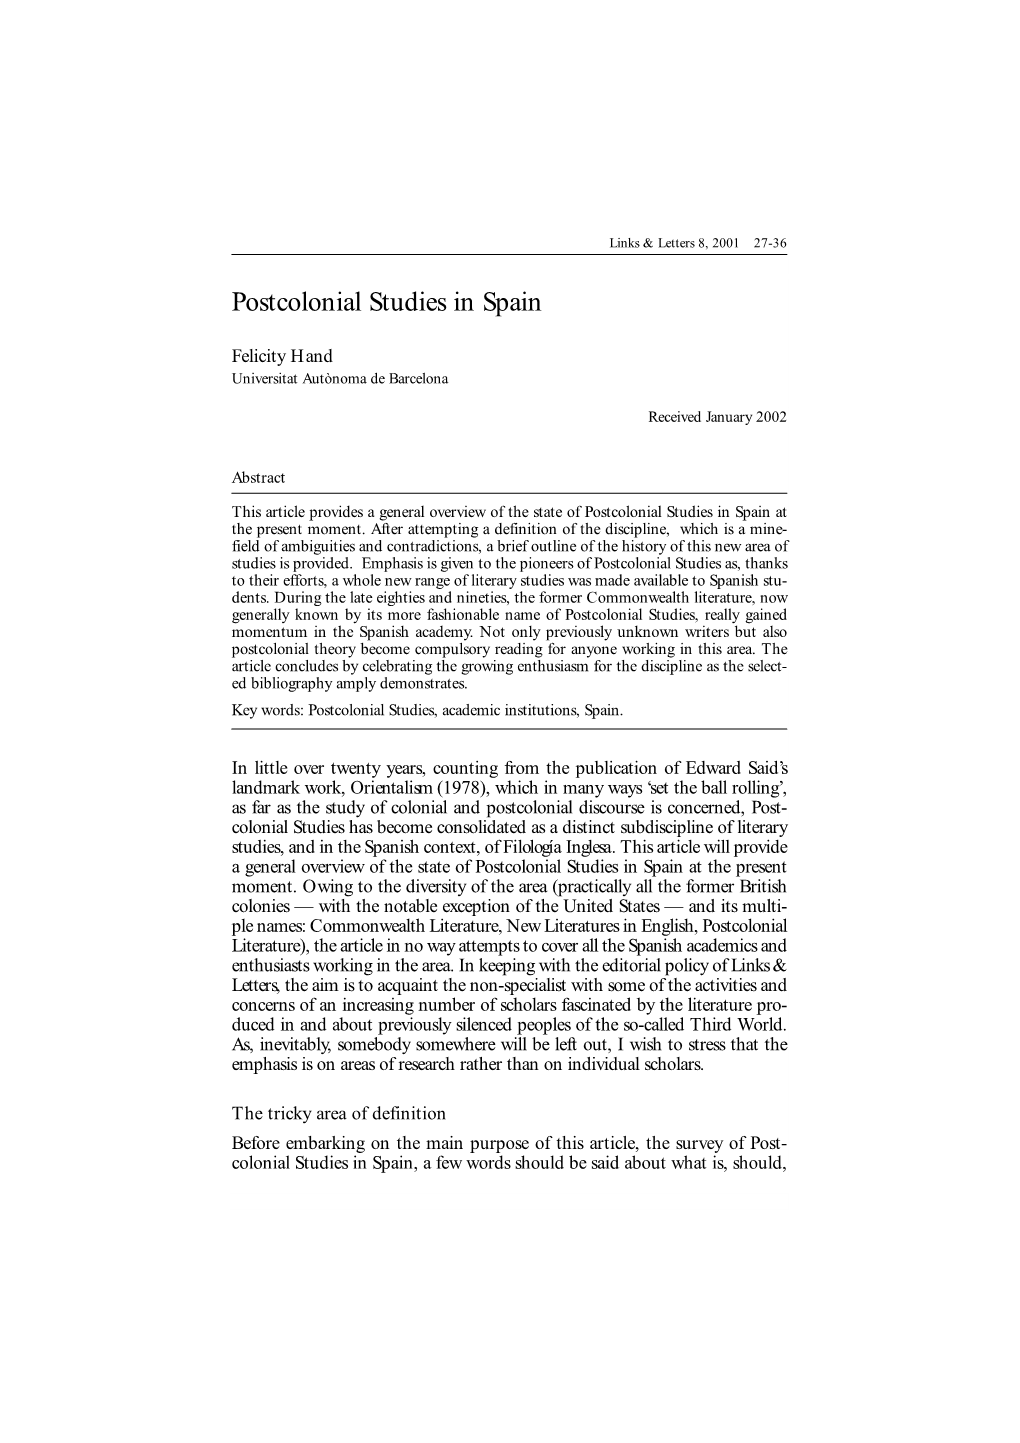 Postcolonial Studies in Spain